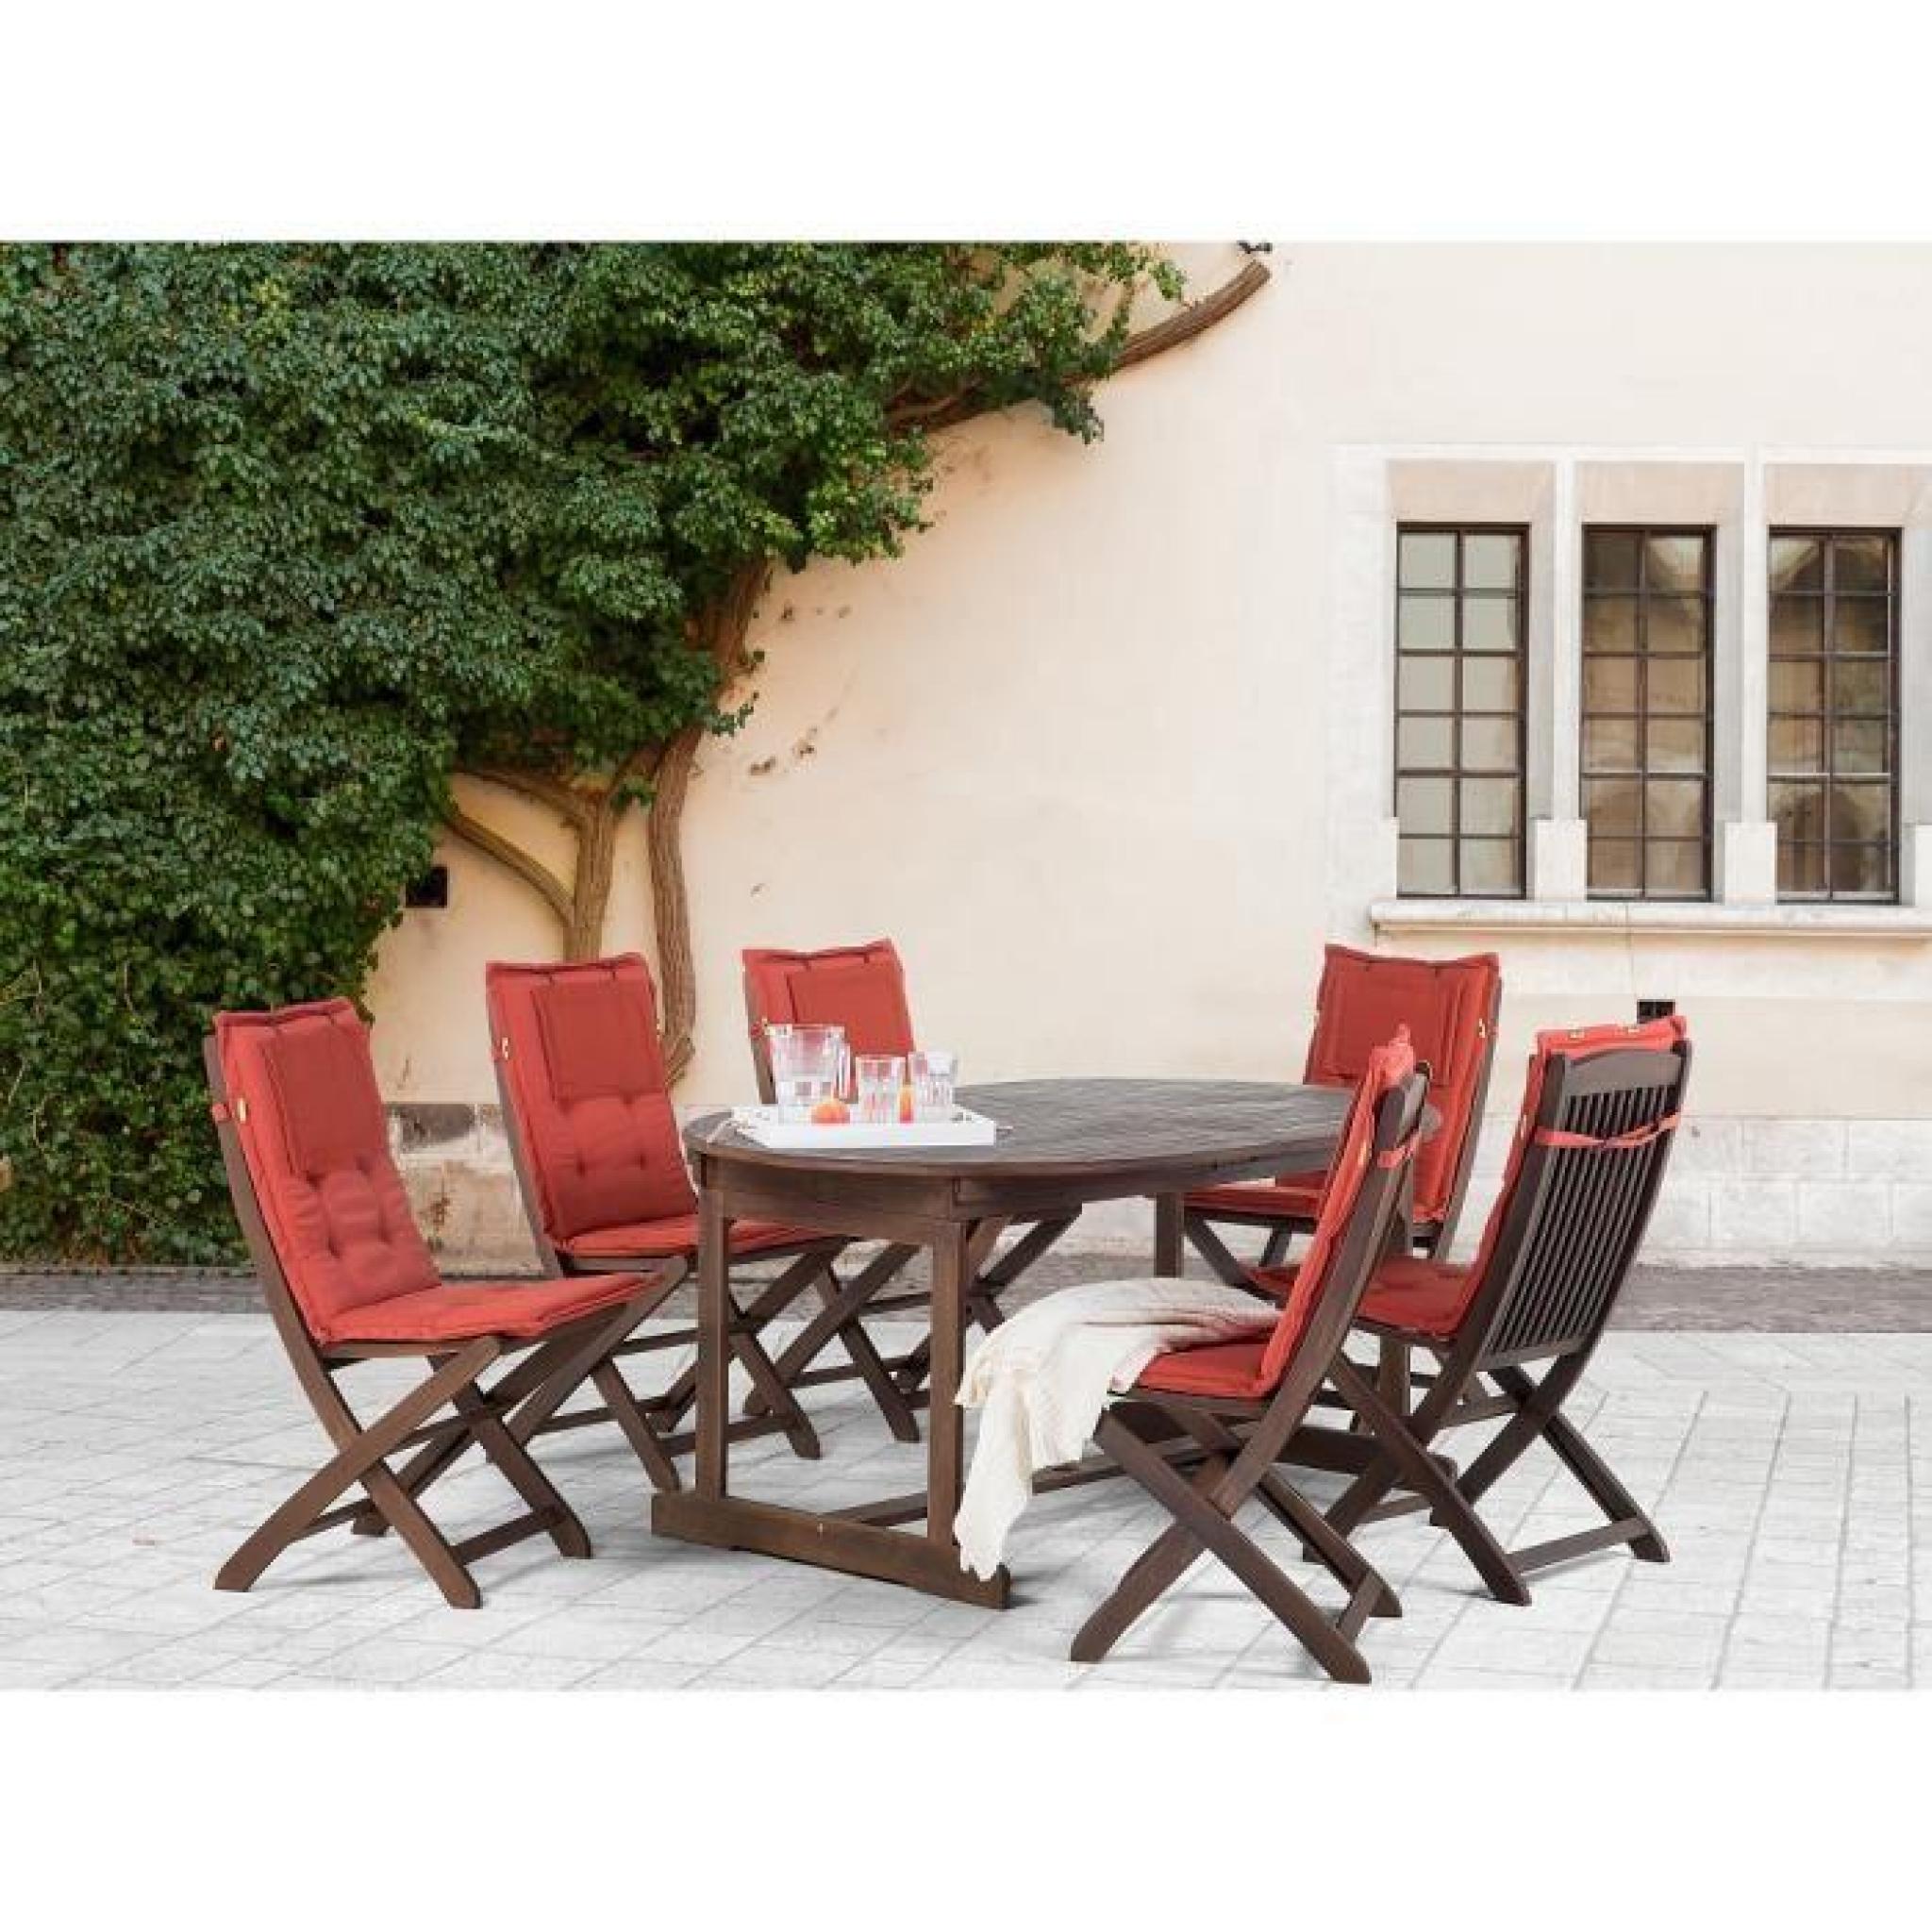 Ce superbe ensemble table + chaises en bois d'acacia teinté comprend 6 chaises inclinables et une table ovale extensible. Son pla...